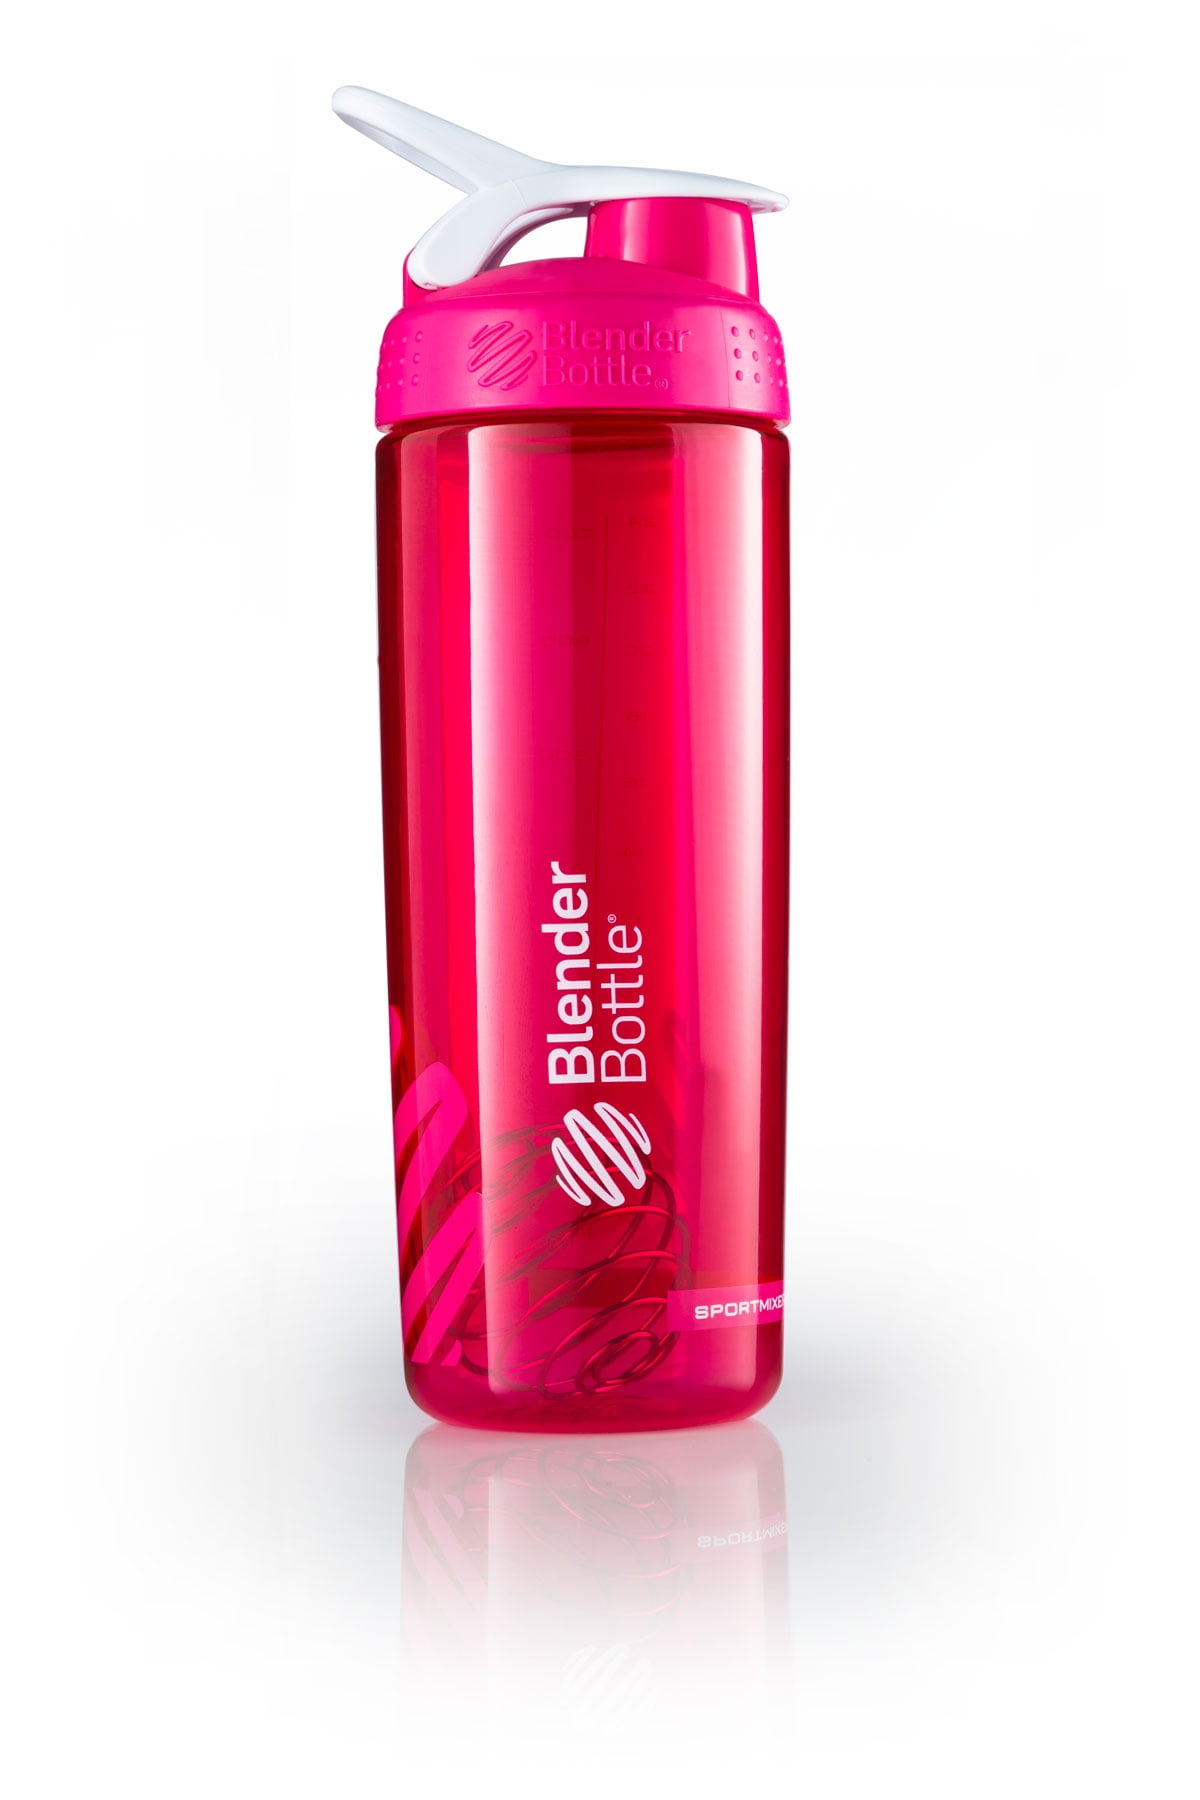 Magenta Pink 26oz Stainless Steel Shaker Blender Bottle